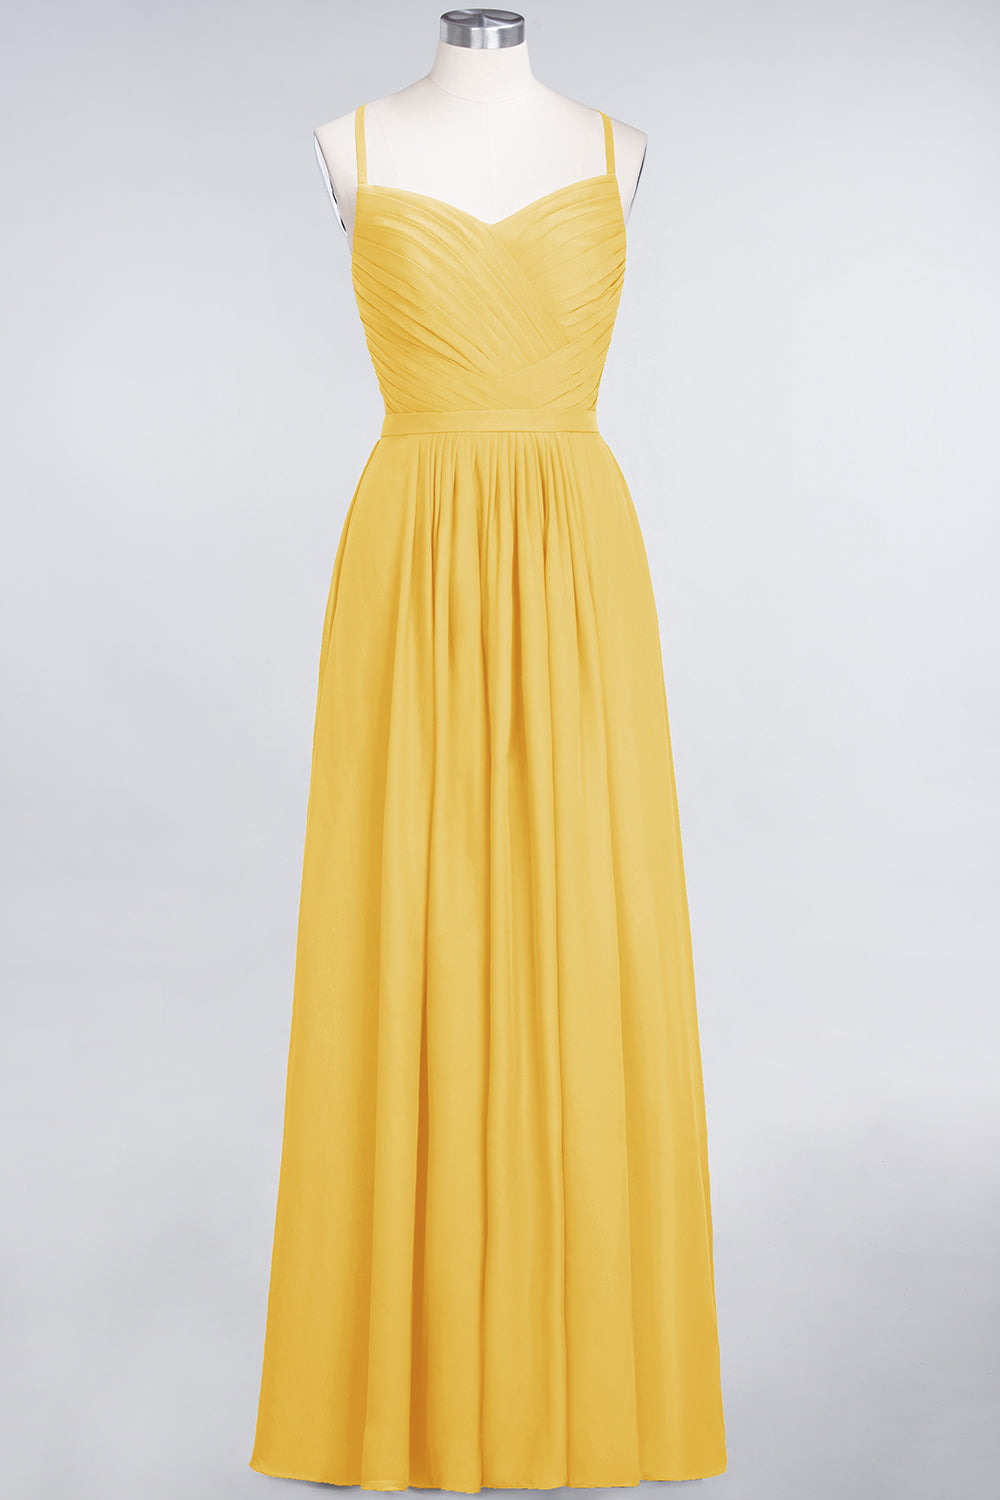 Glamorous Spaghetti Straps Sweetheart Ruffle Chiffon Bridesmaid Dress Online-27dress